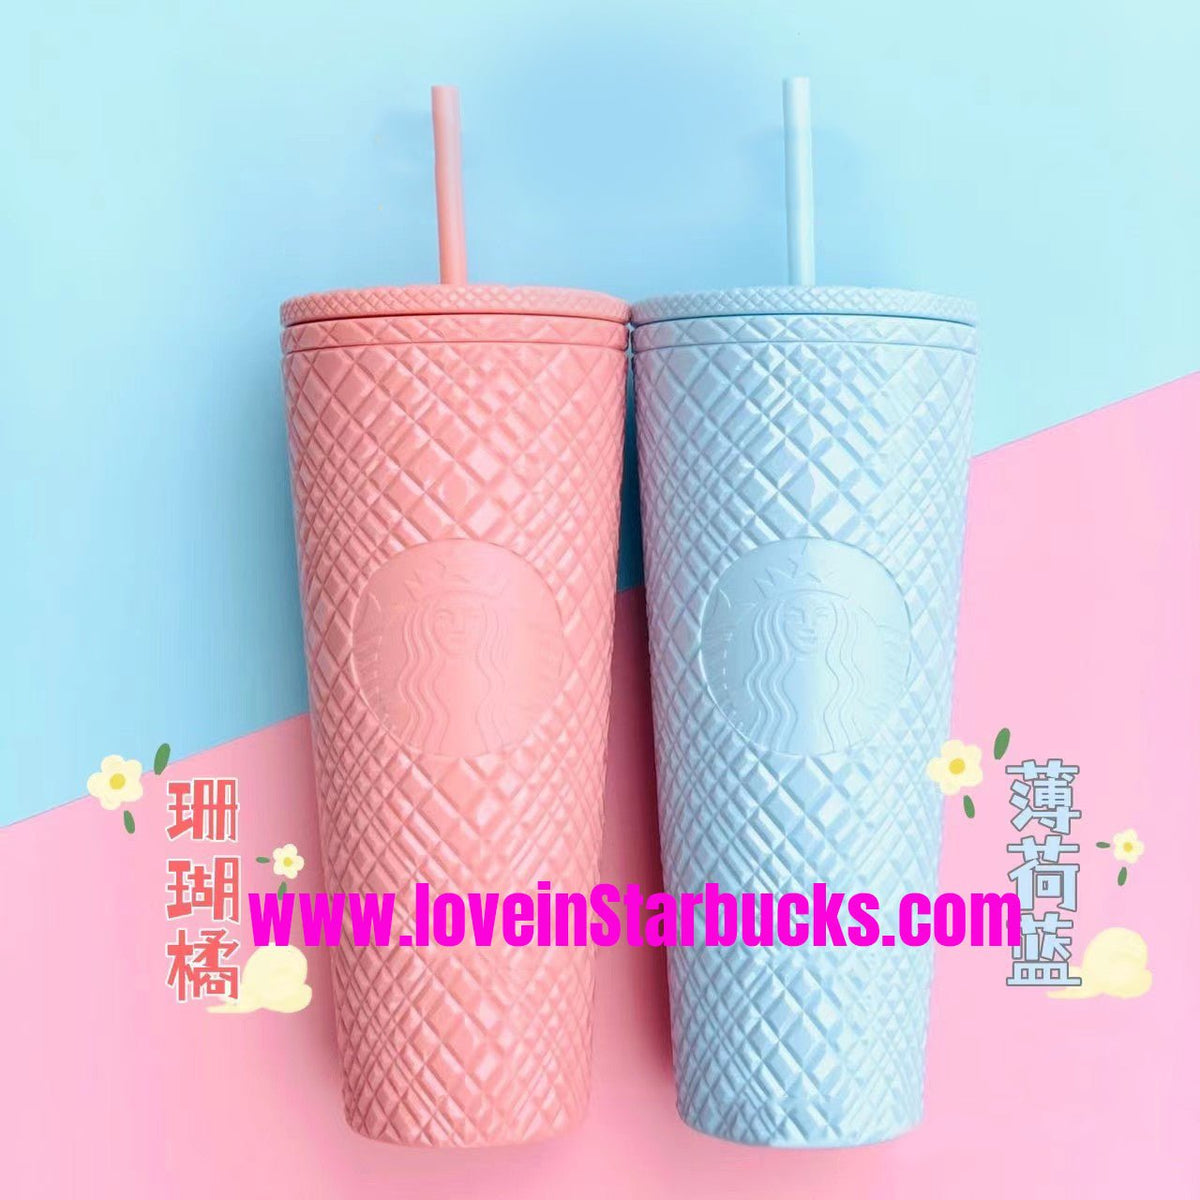 http://loveinstarbucks.com/cdn/shop/products/starbucks-taiwan-coral-pink-mint-blue-24oz-jeweled-straw-cups-740085_1200x1200.jpg?v=1674153270